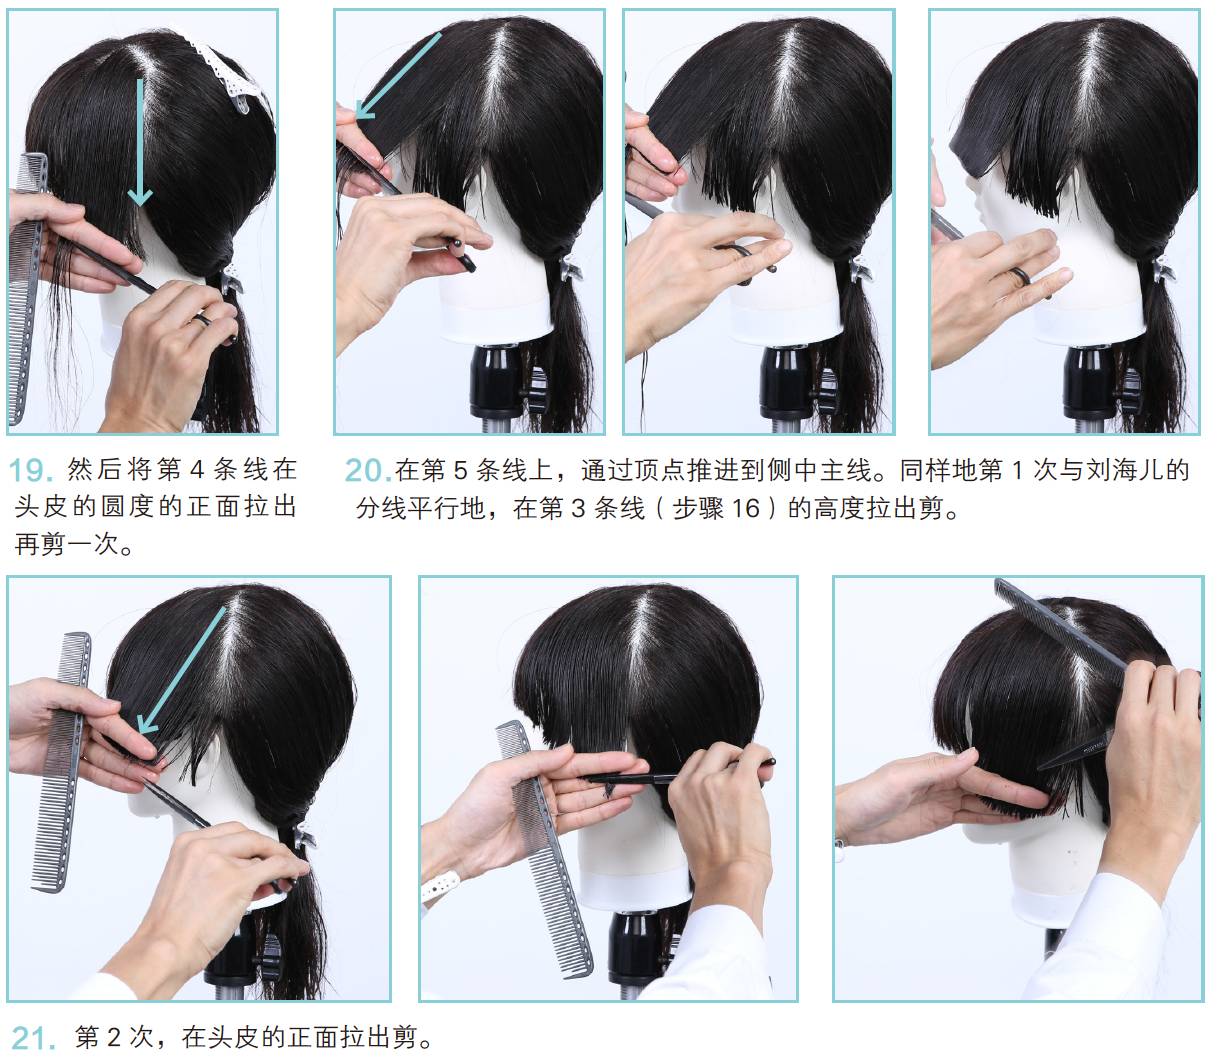 fg剪刘海整体展示剪刘海&在左侧发区加入fg短发蘑菇头剪发教程上篇